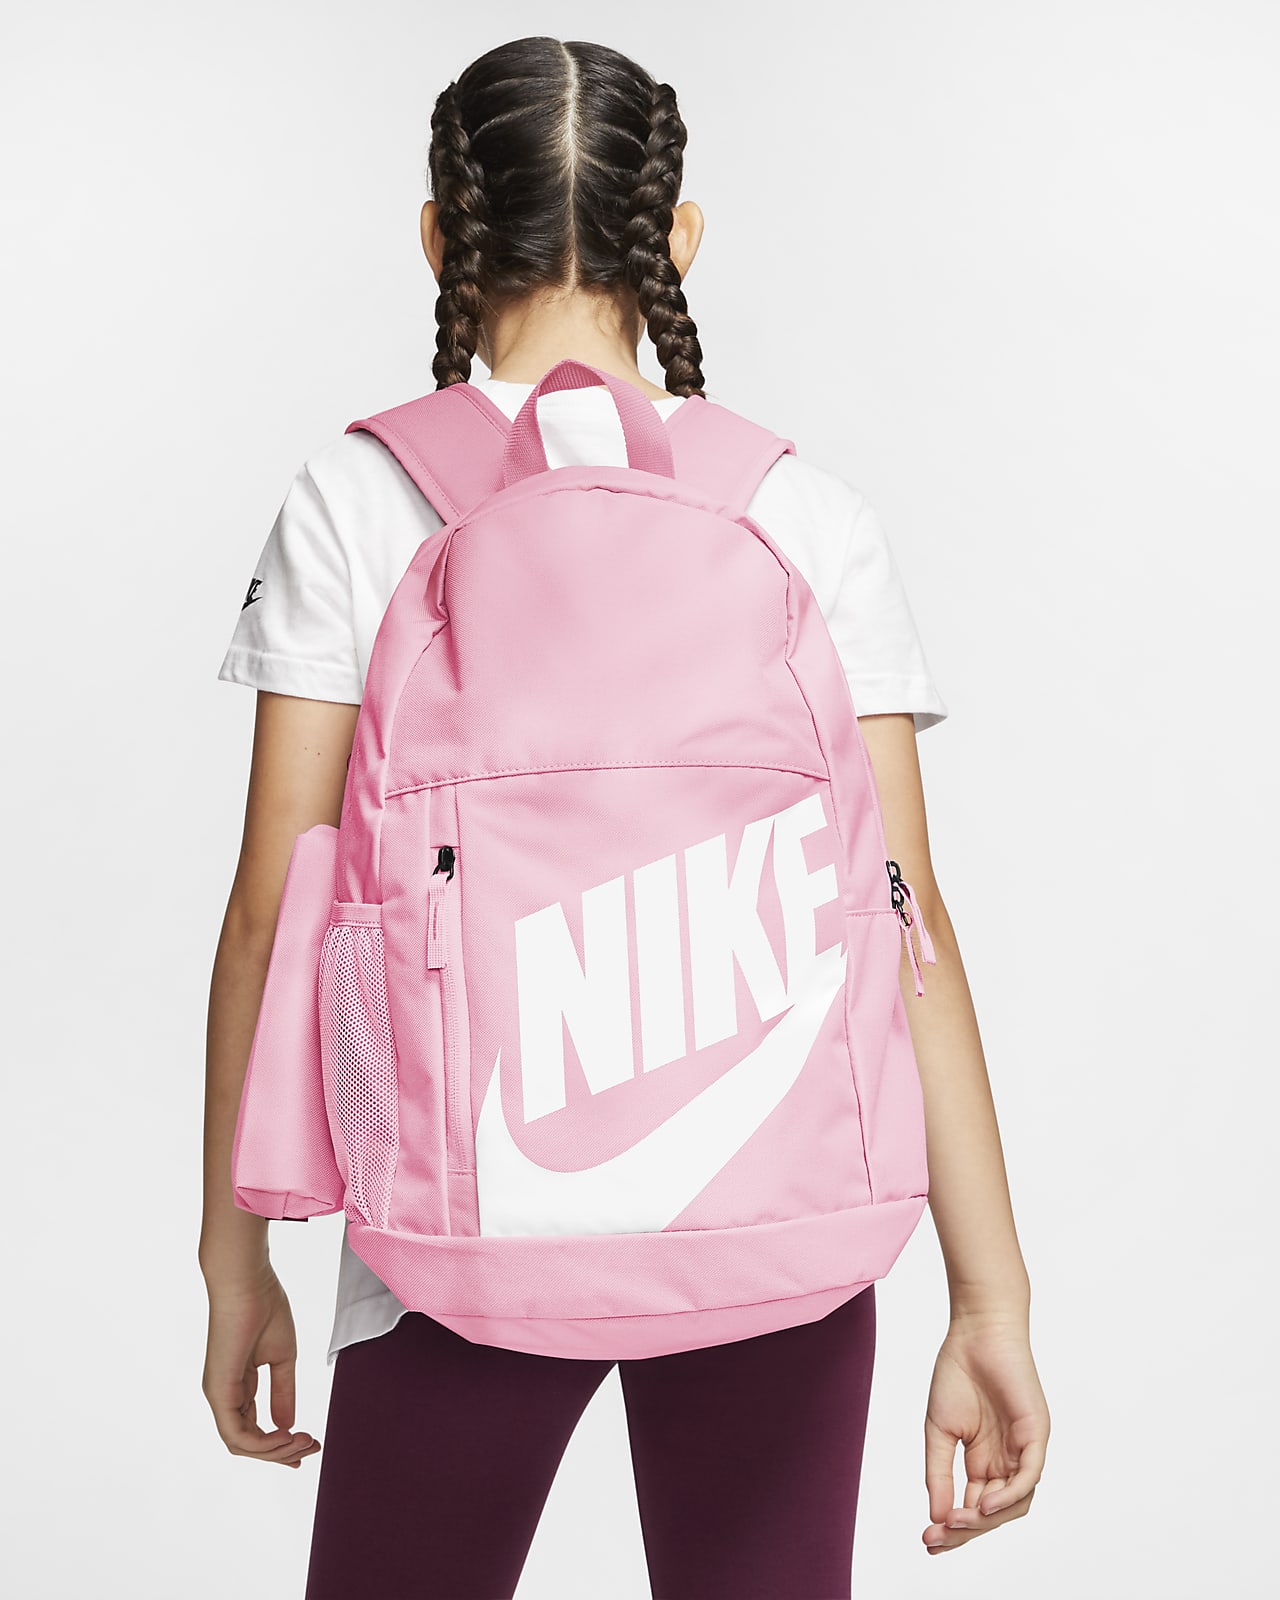 nike af1 backpack pink